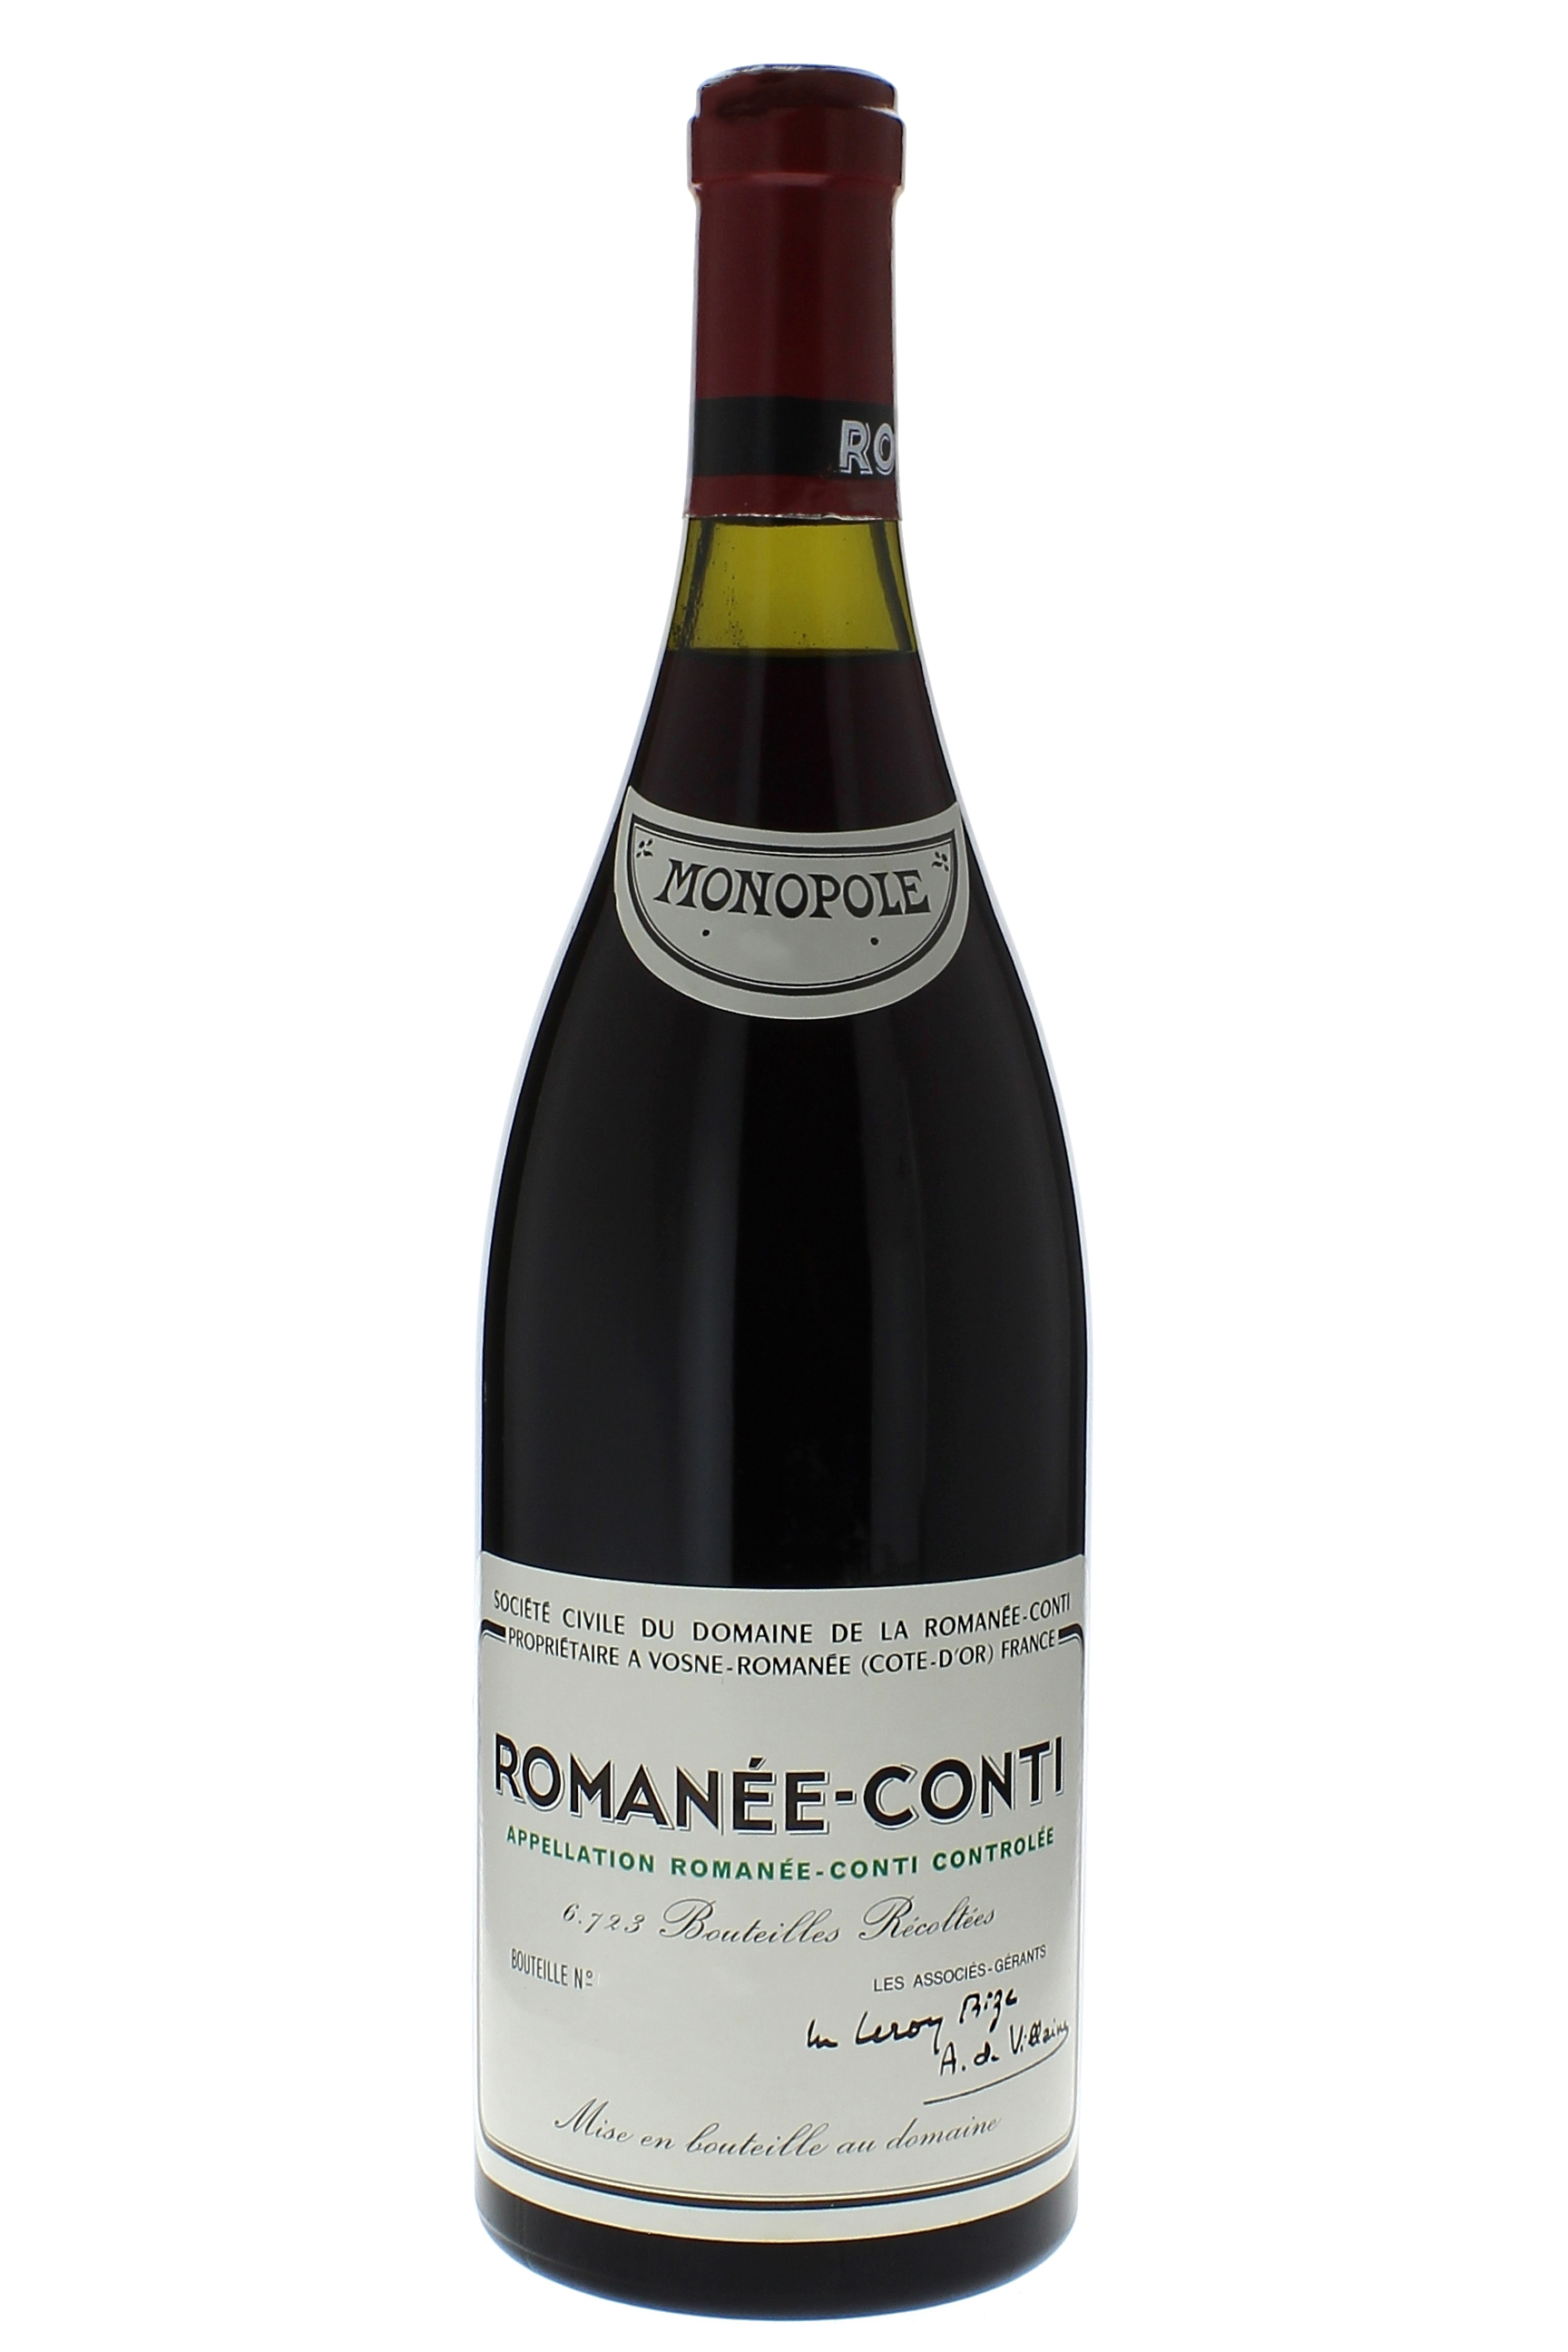 Romane conti grand cru 1974 Domaine ROMANEE CONTI, Bourgogne rouge